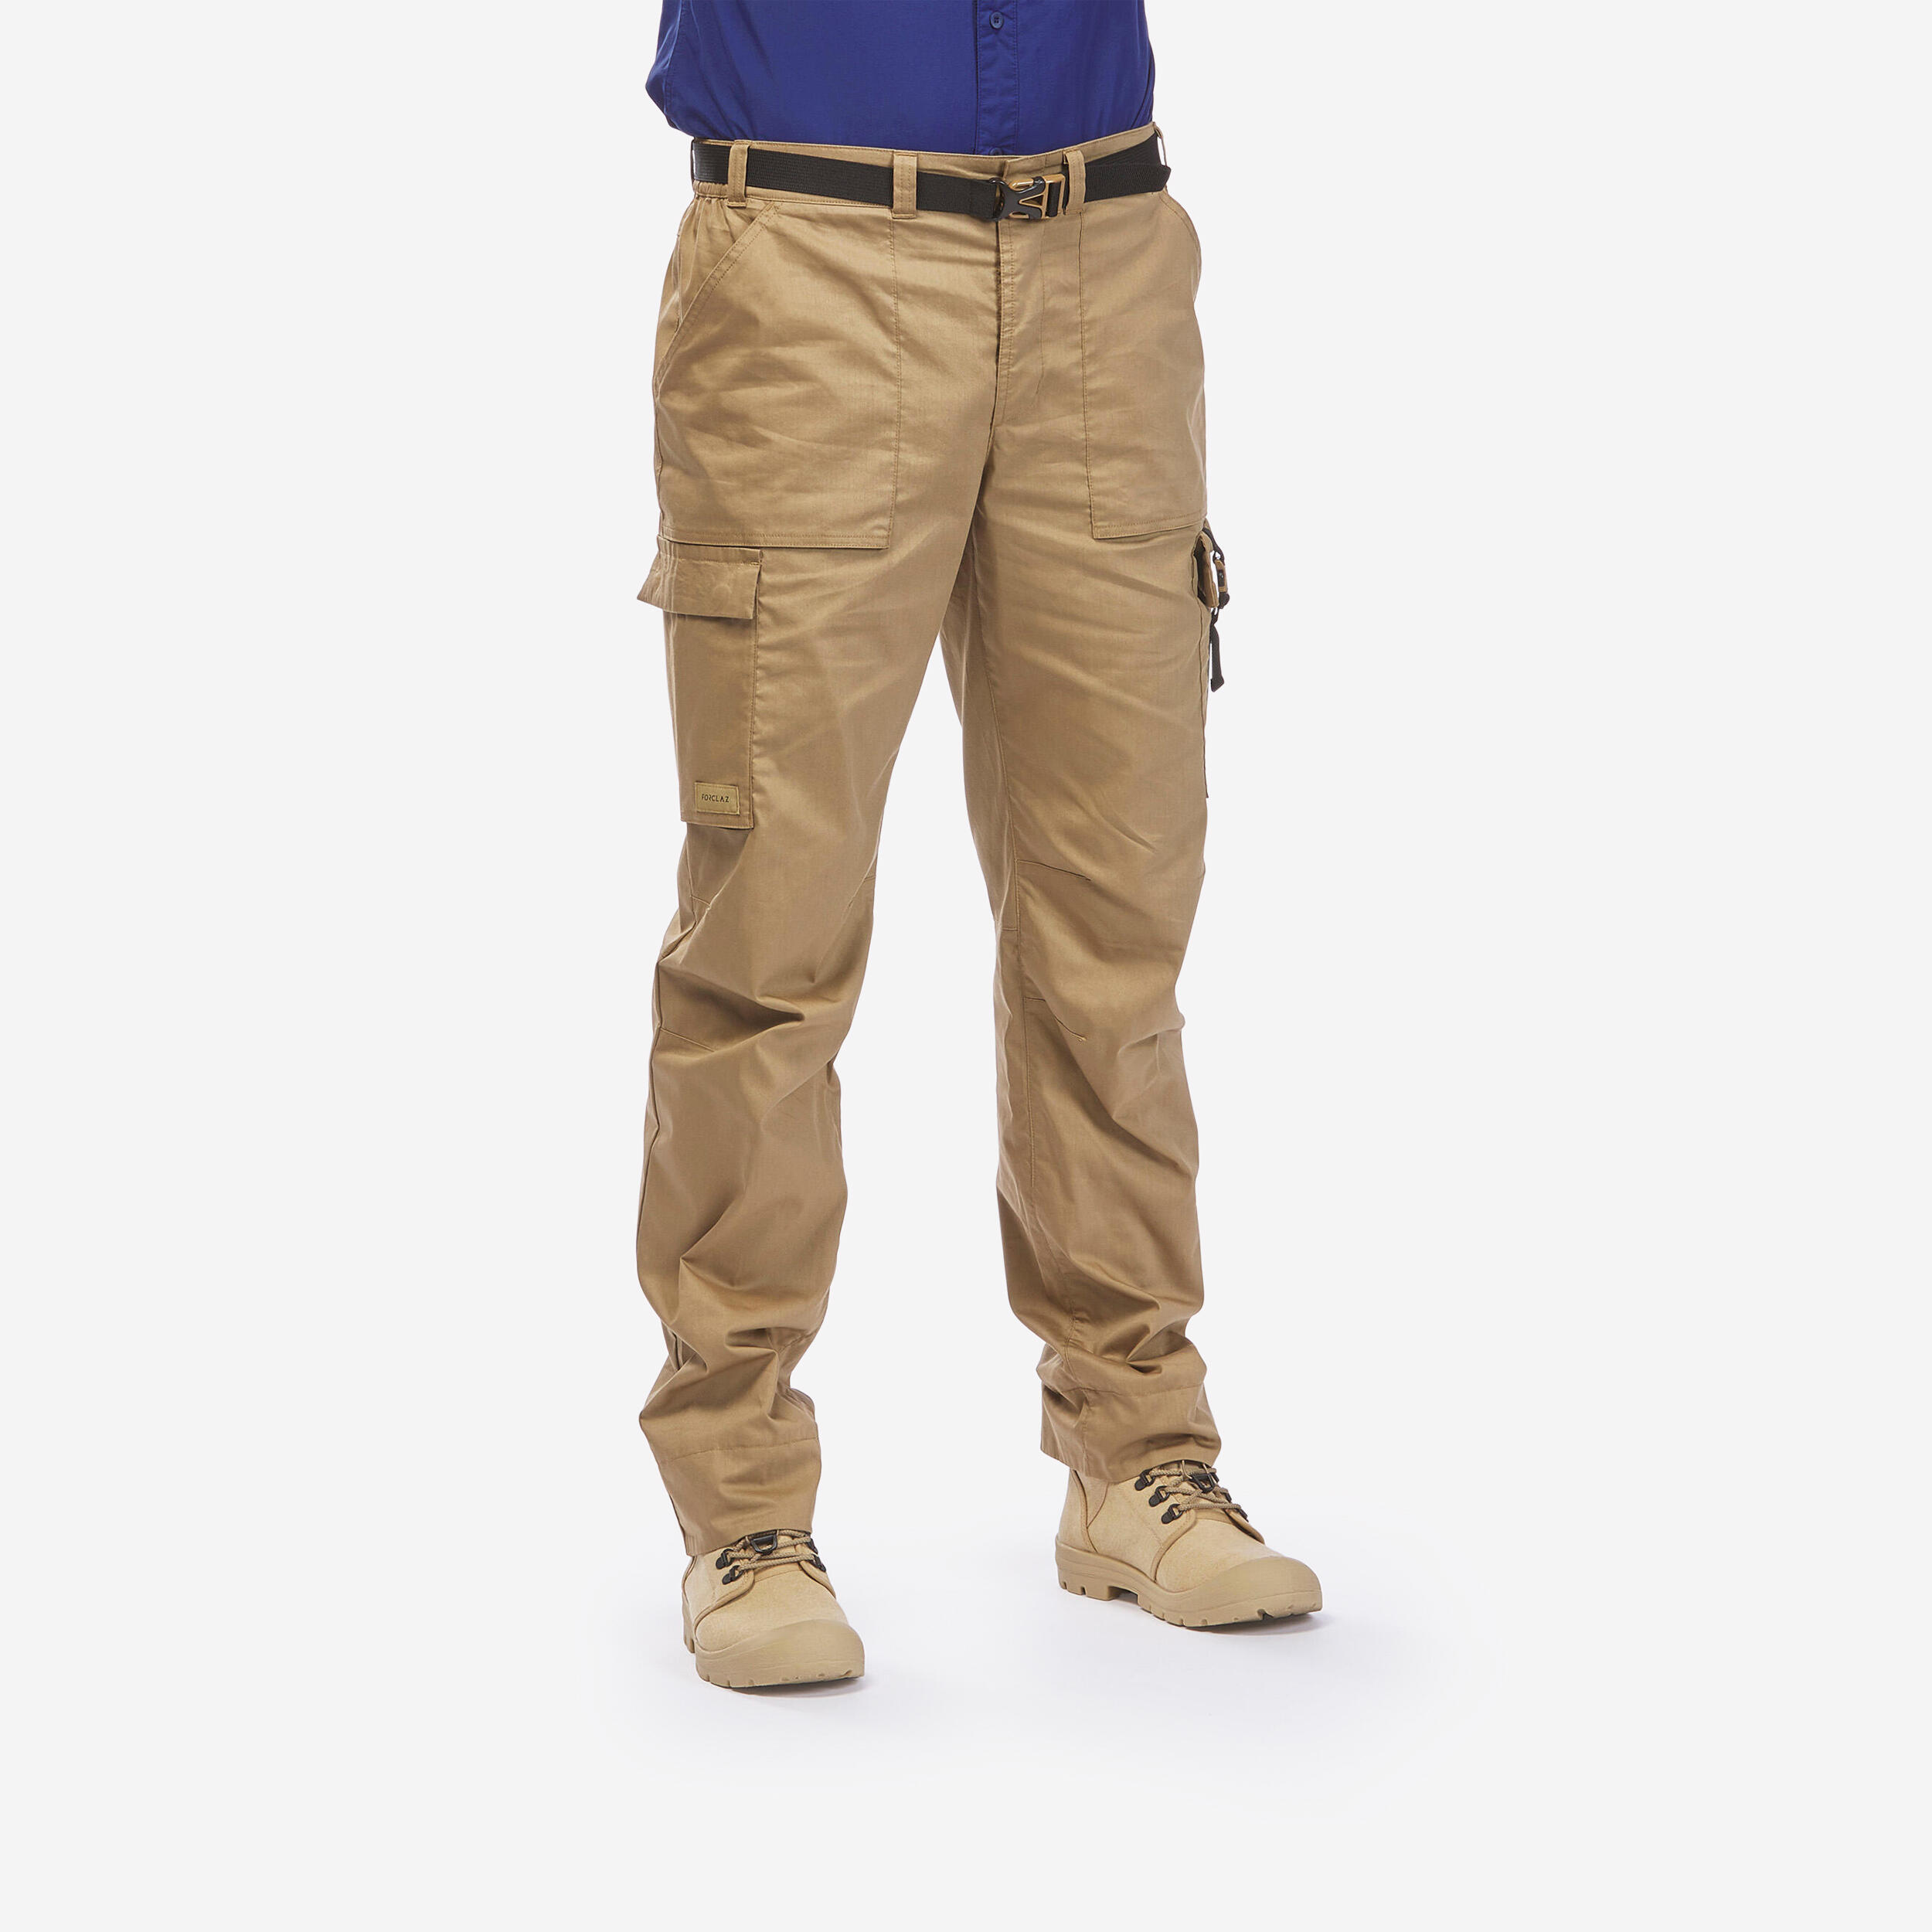 Men’s Anti-UV Desert Trekking Trousers DESERT 900 - Brown 1/9